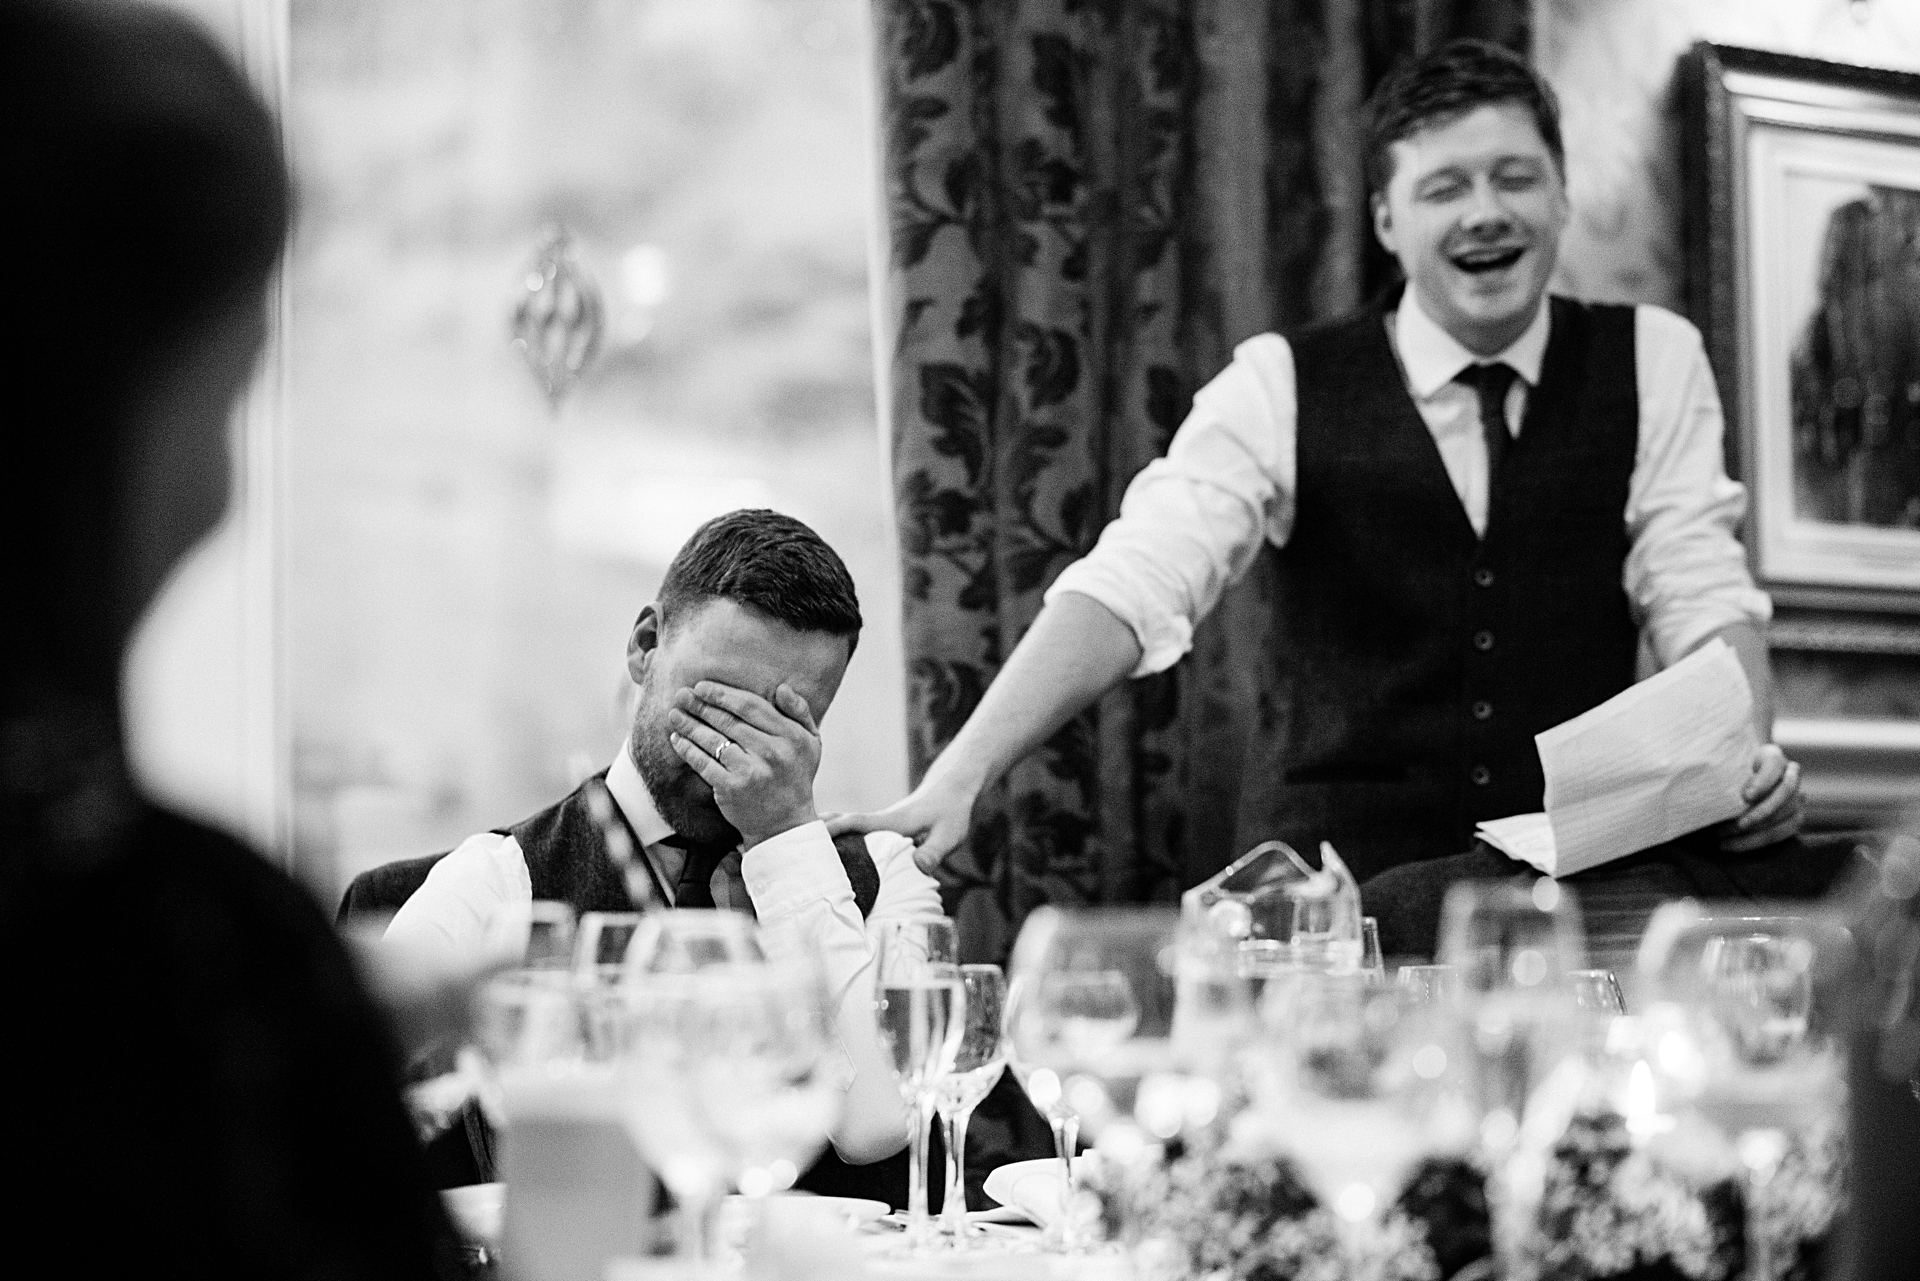 best mans speech embarrasses groom